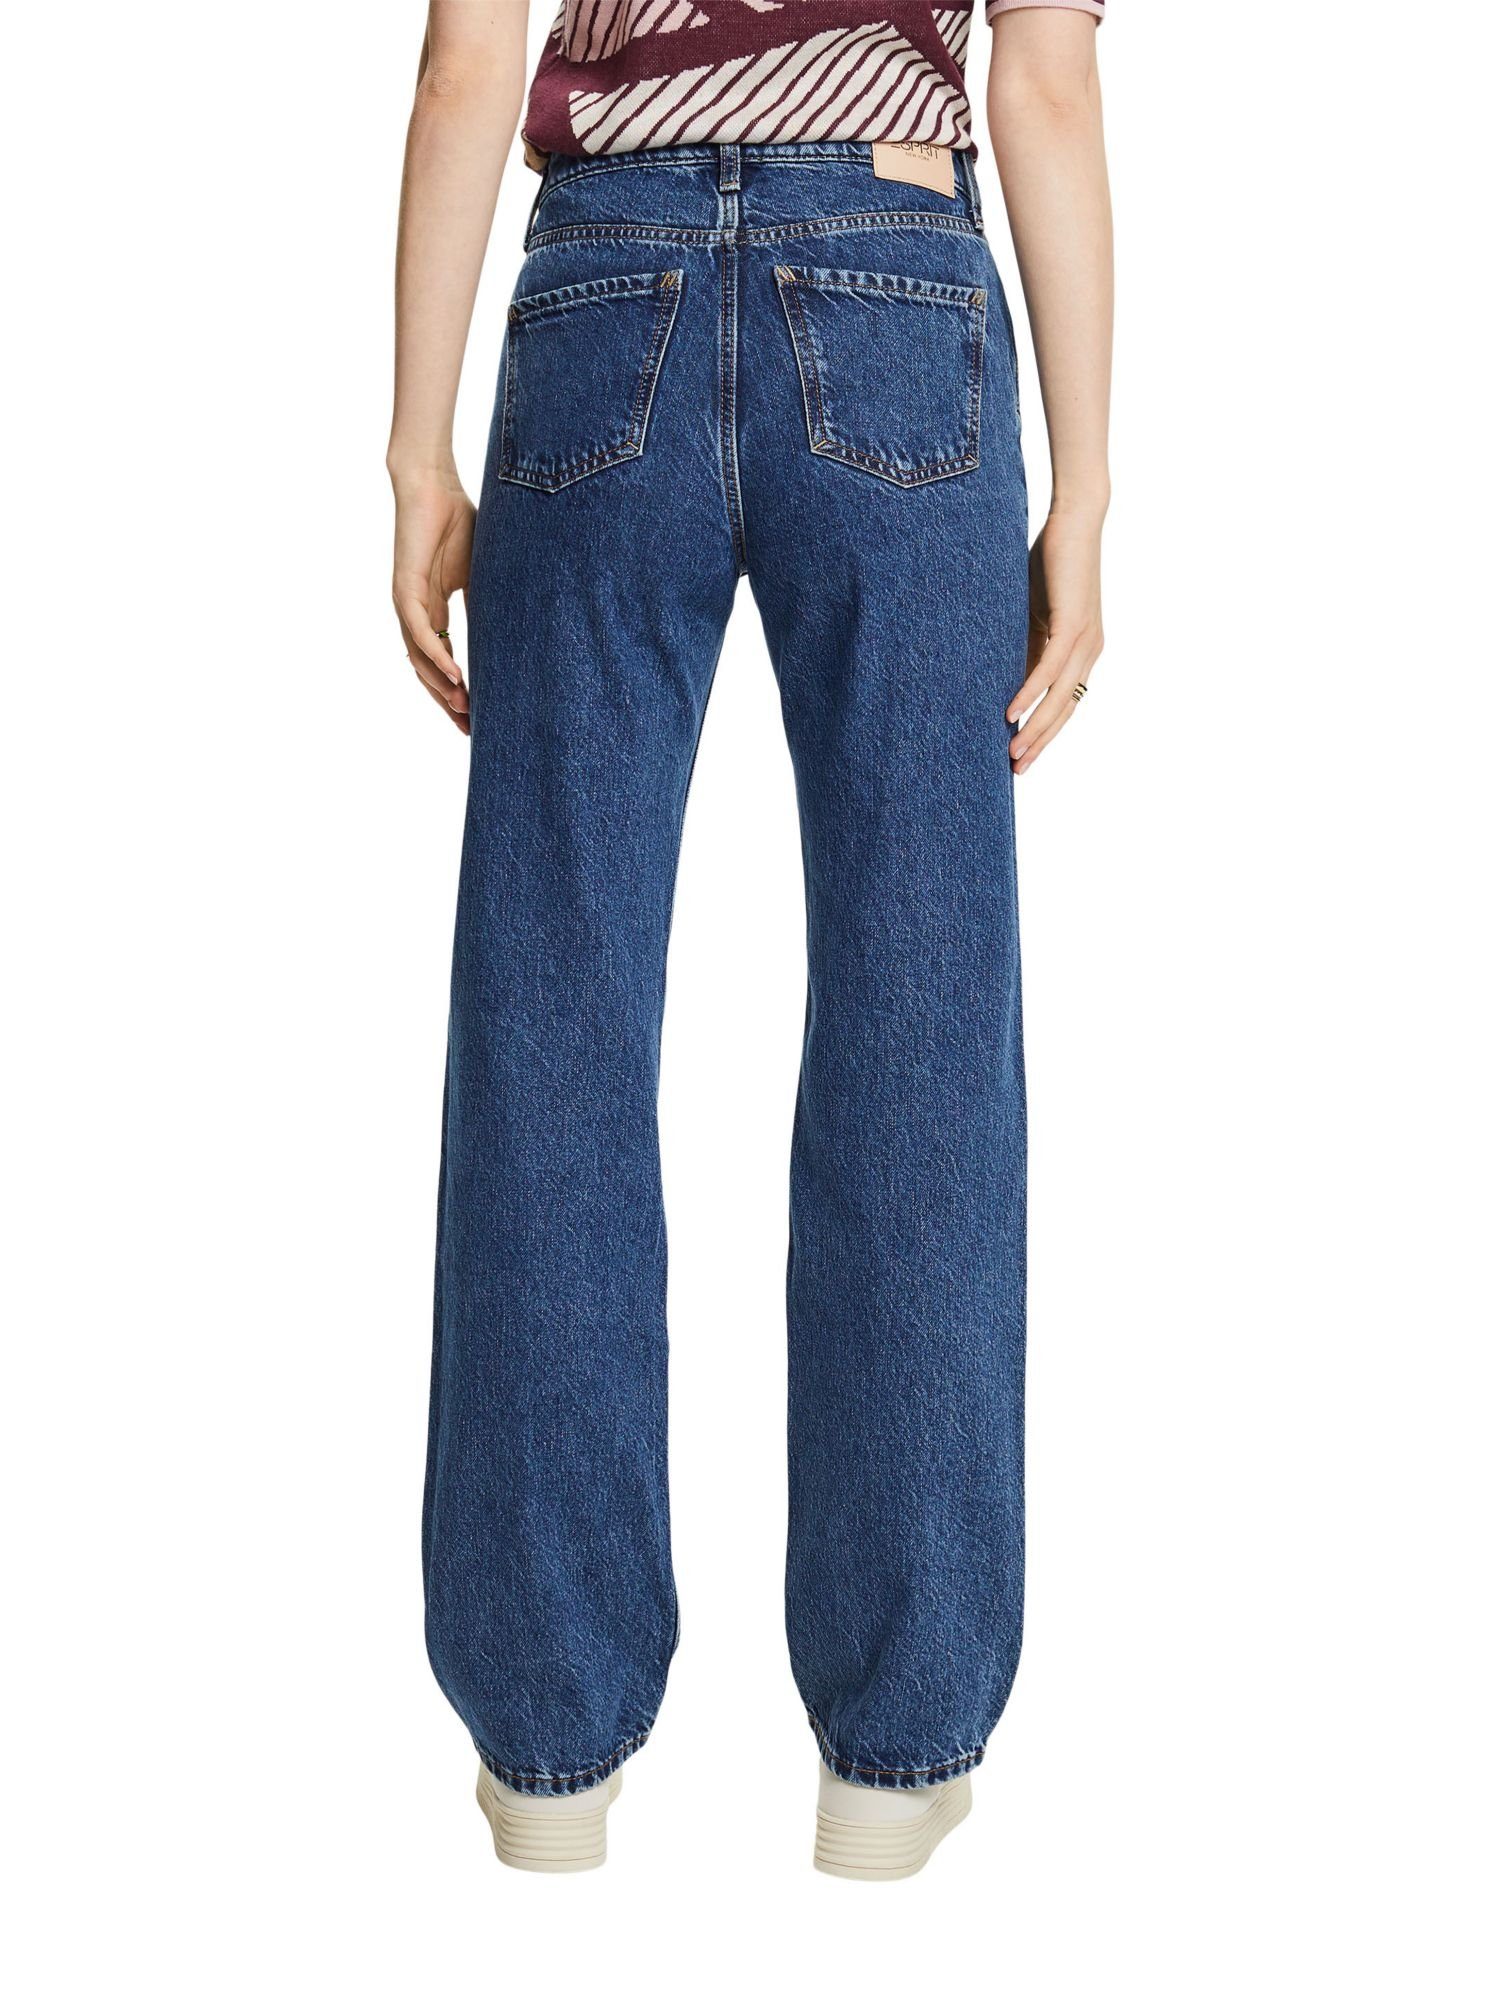 Straight-Jeans Retro-Jeans hohem Passform Esprit und mit Bund gerader